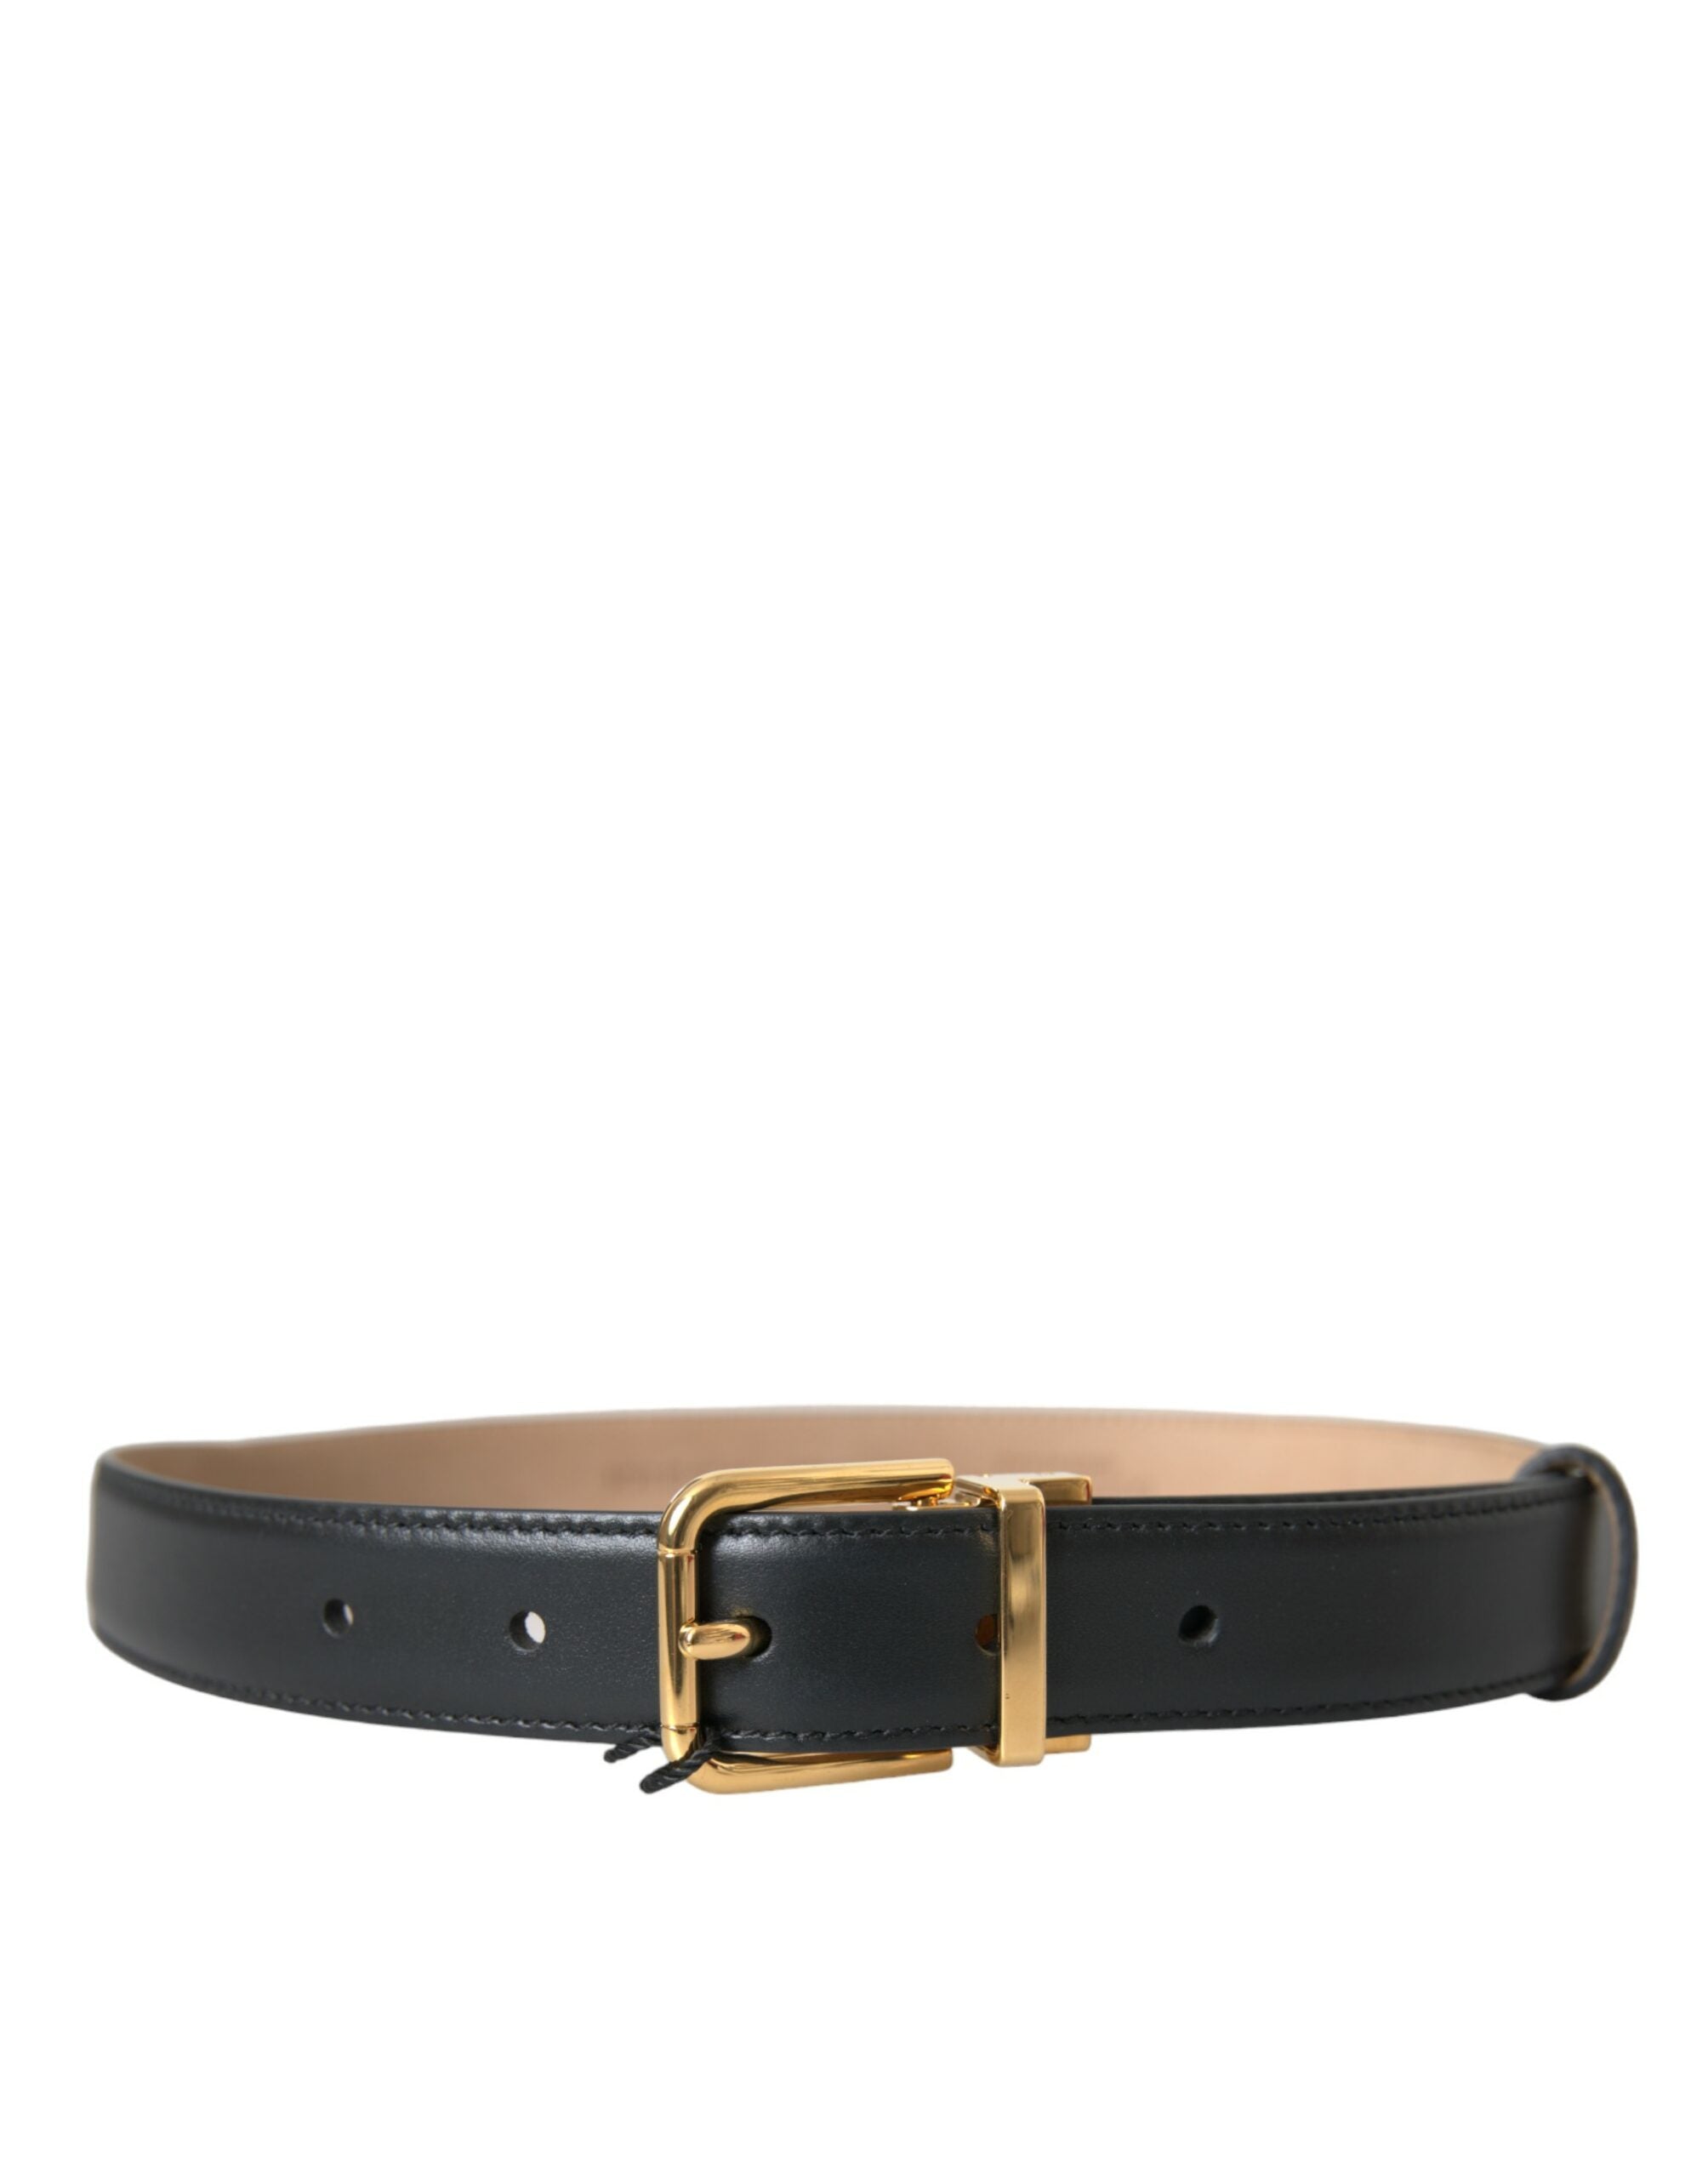 Black Leather Gold Metal Buckle Belt Men - Divitiae Glamour